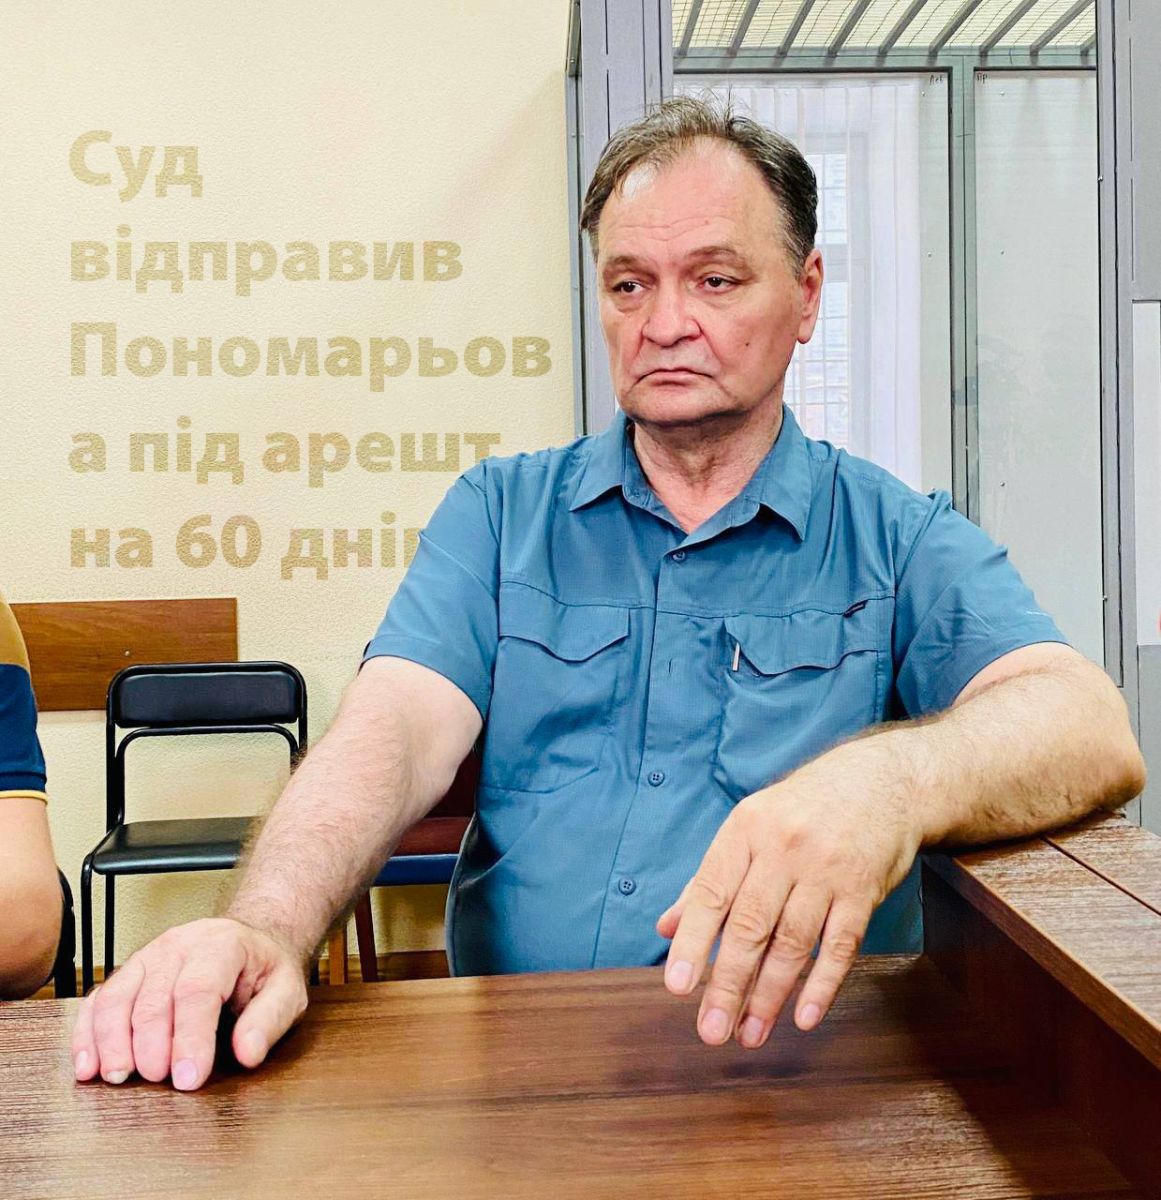 Суд відправив Пономарьова під арешт на 60 днів